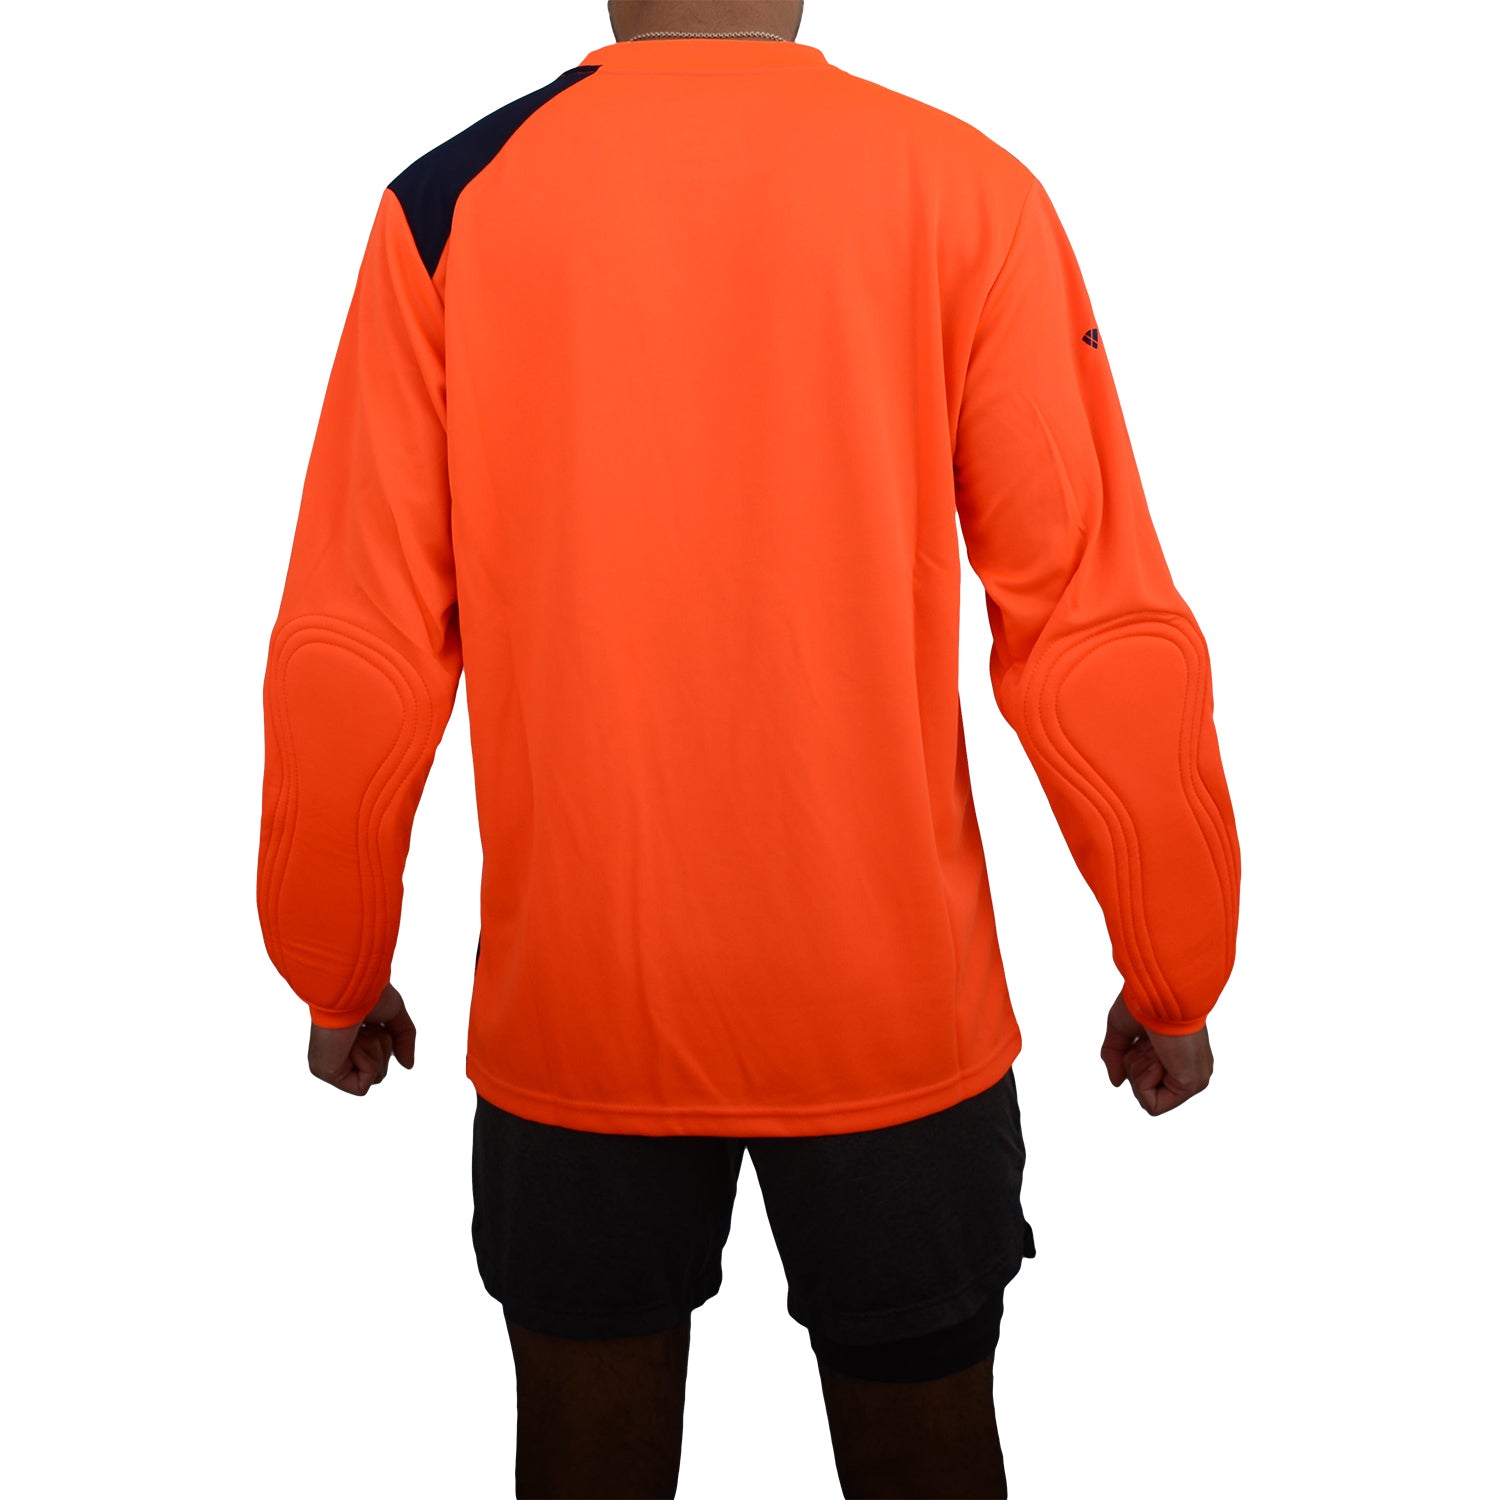 Arroyo Goalkeeping Jersey - Orange/Navy